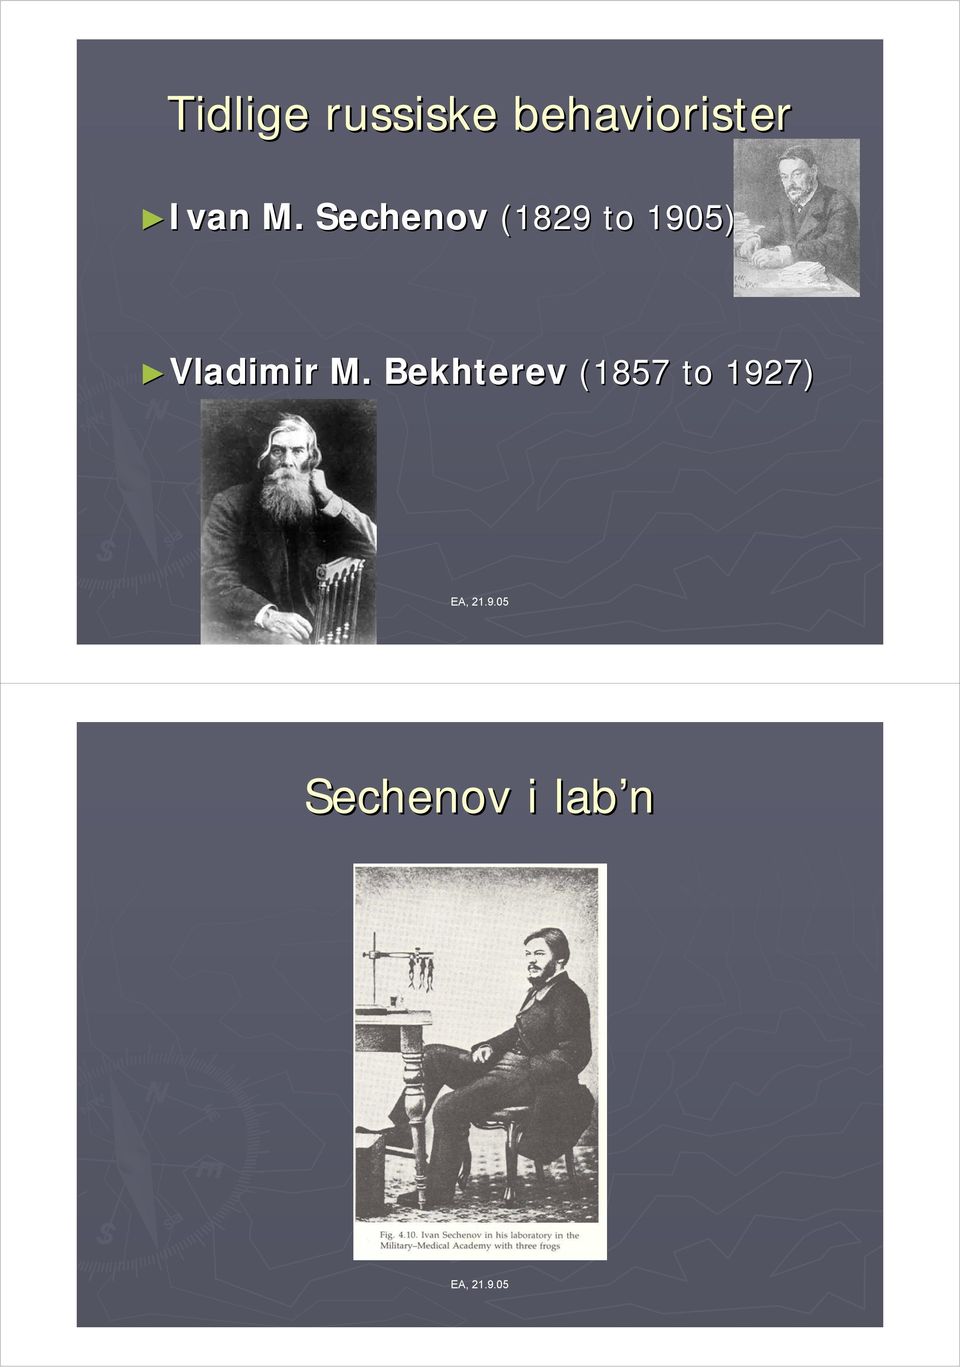 Sechenov (1829 to 1905)